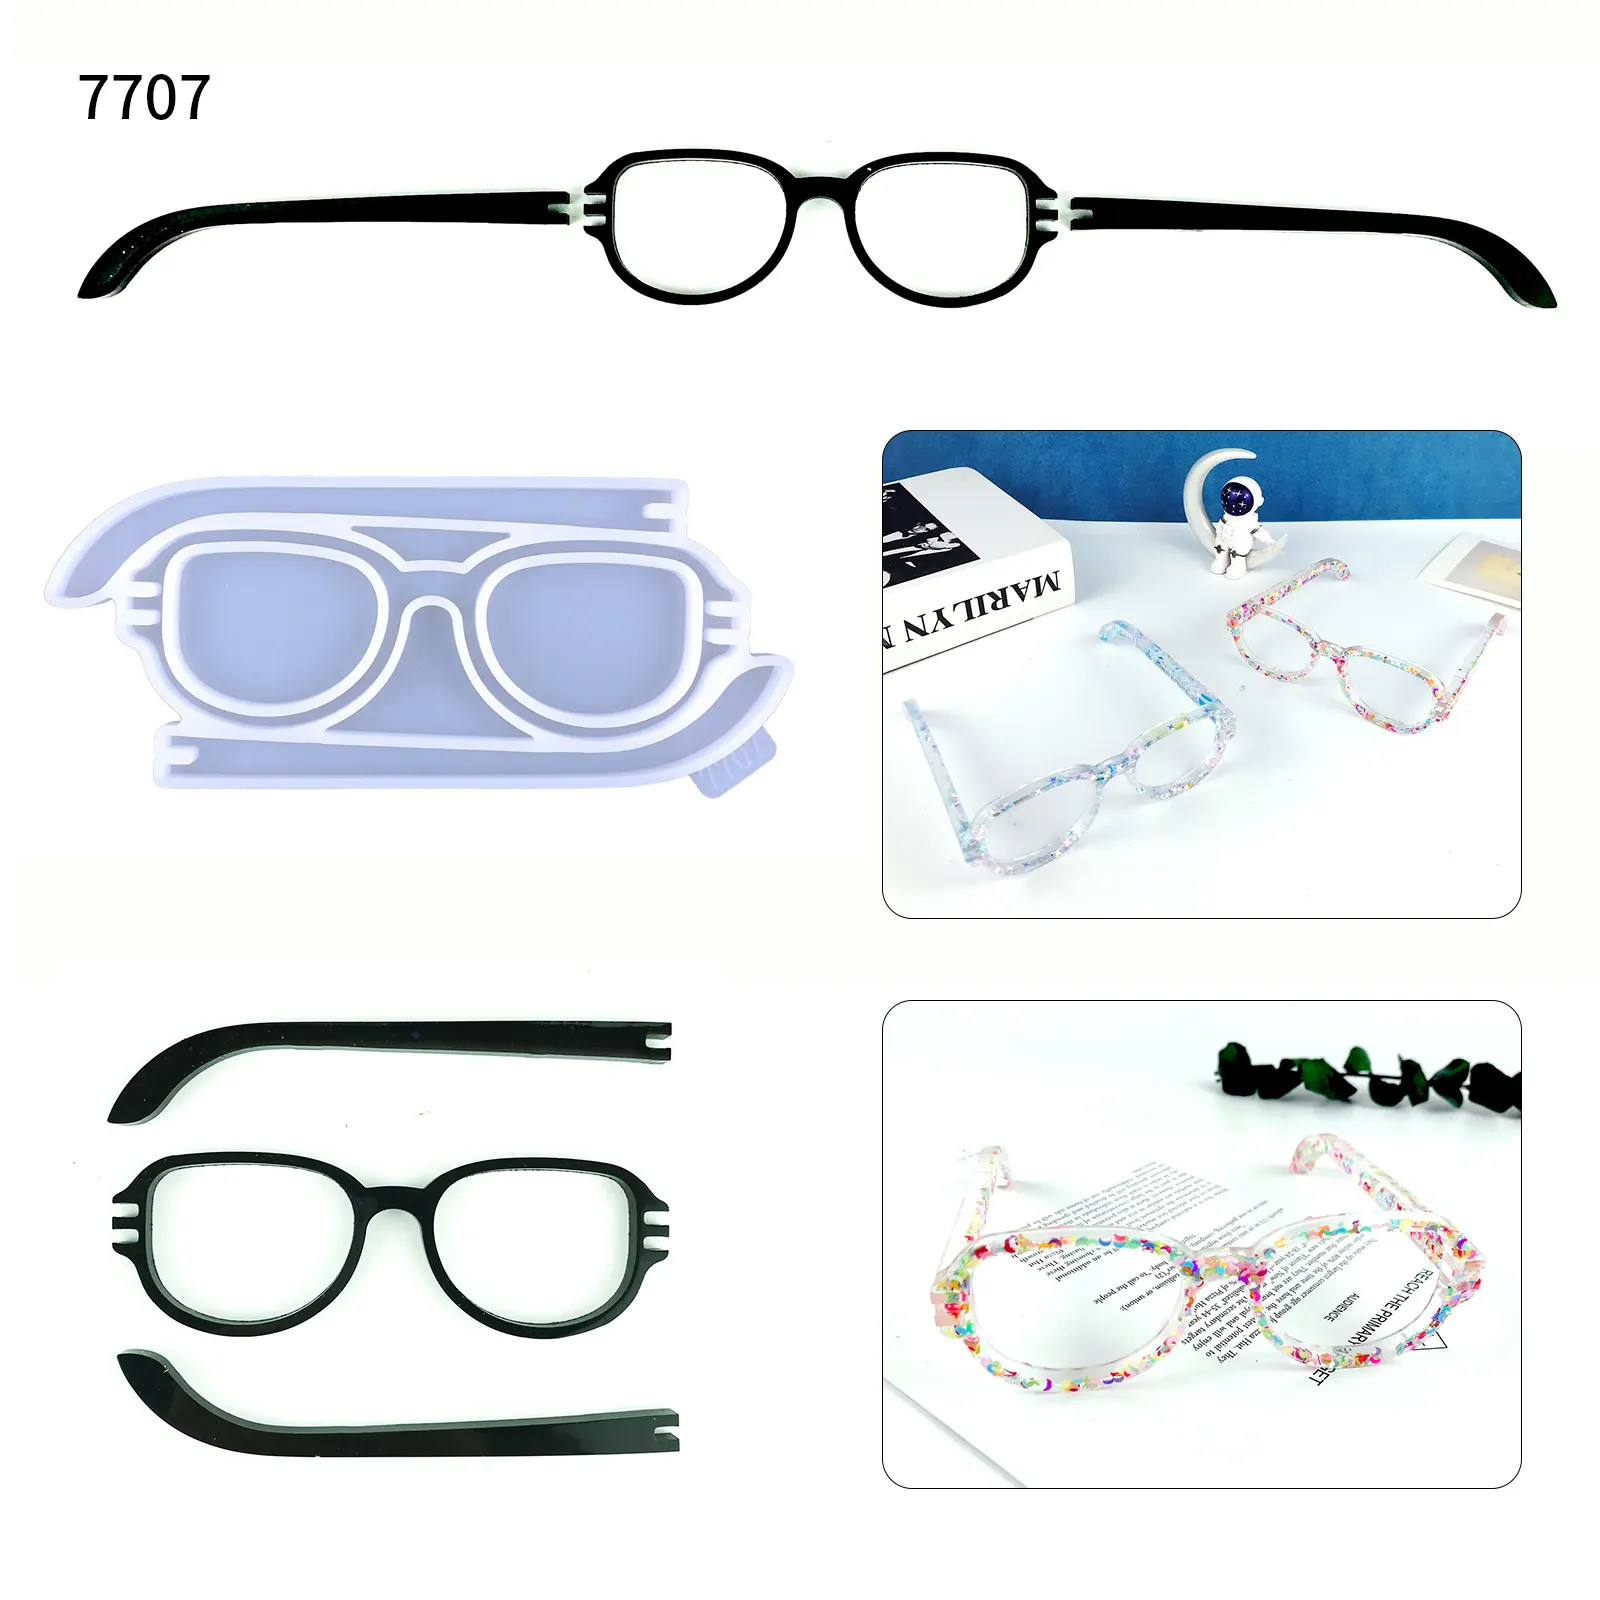 7707 occhiali resina stampo in silicone decorazione da tavolo occhiali stampo in silicone resina epossidica